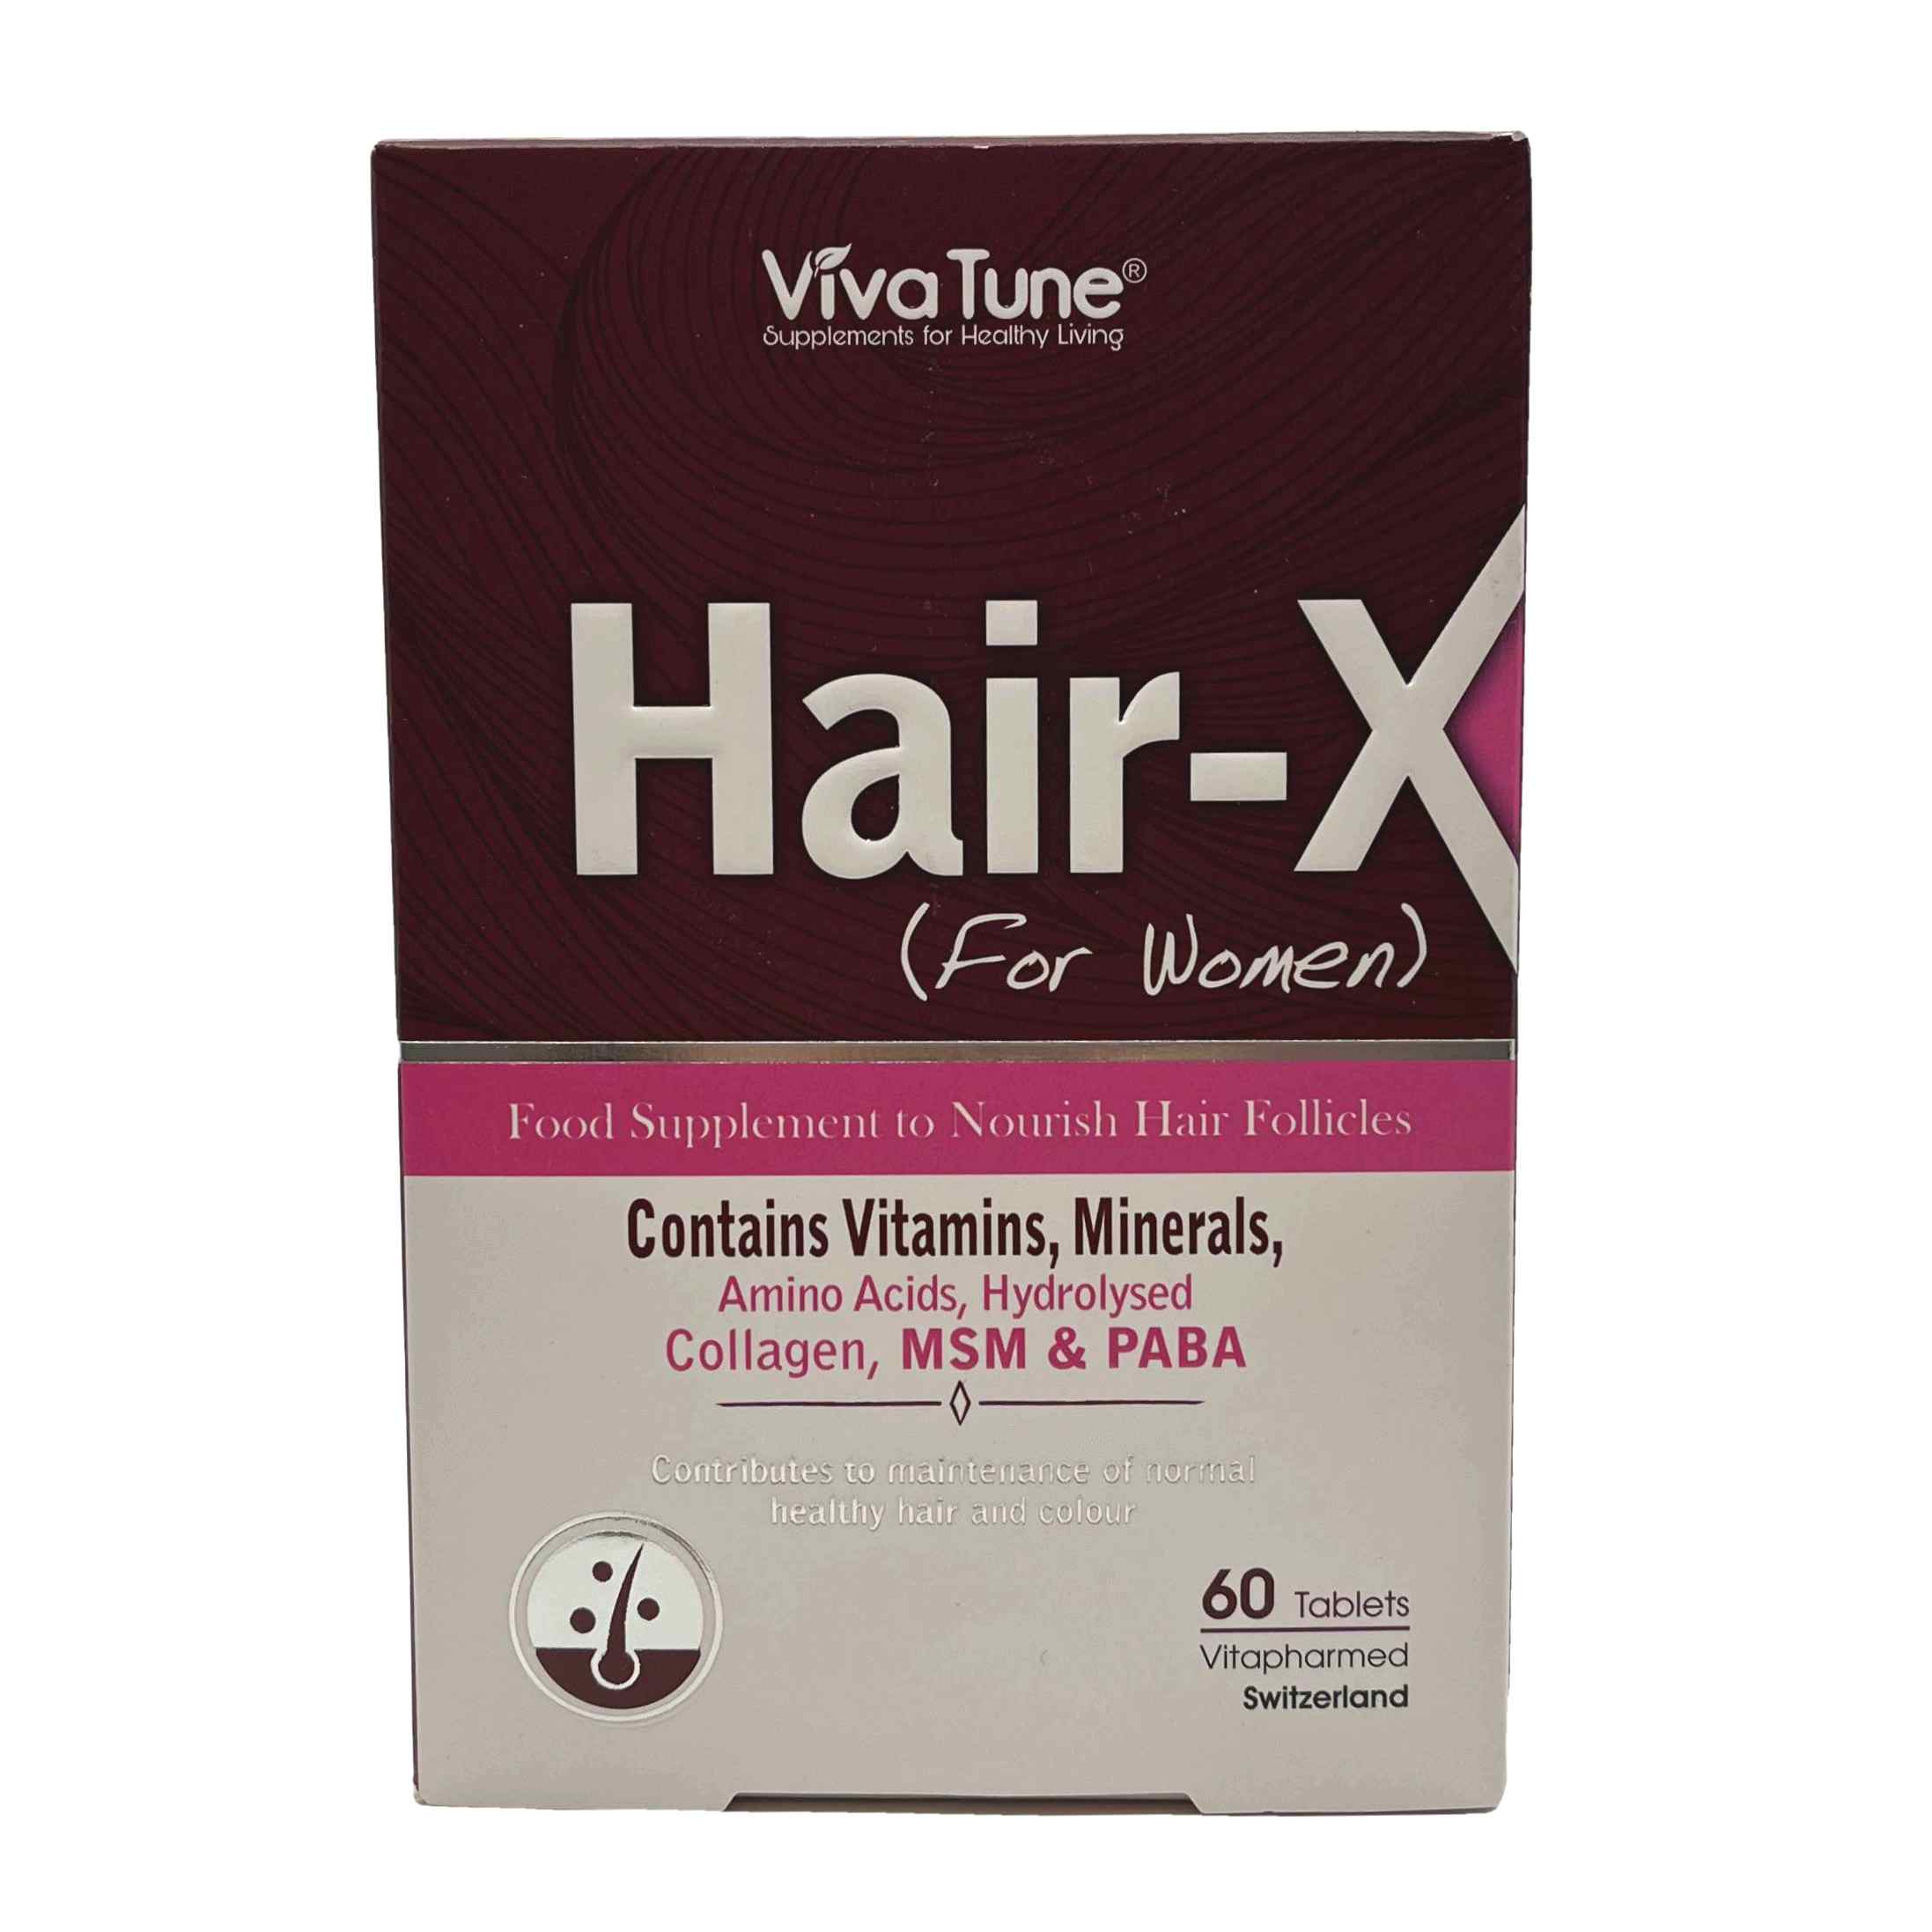 قرص هیر ایکس خانم ها ویواتیون Vivatune Hair X